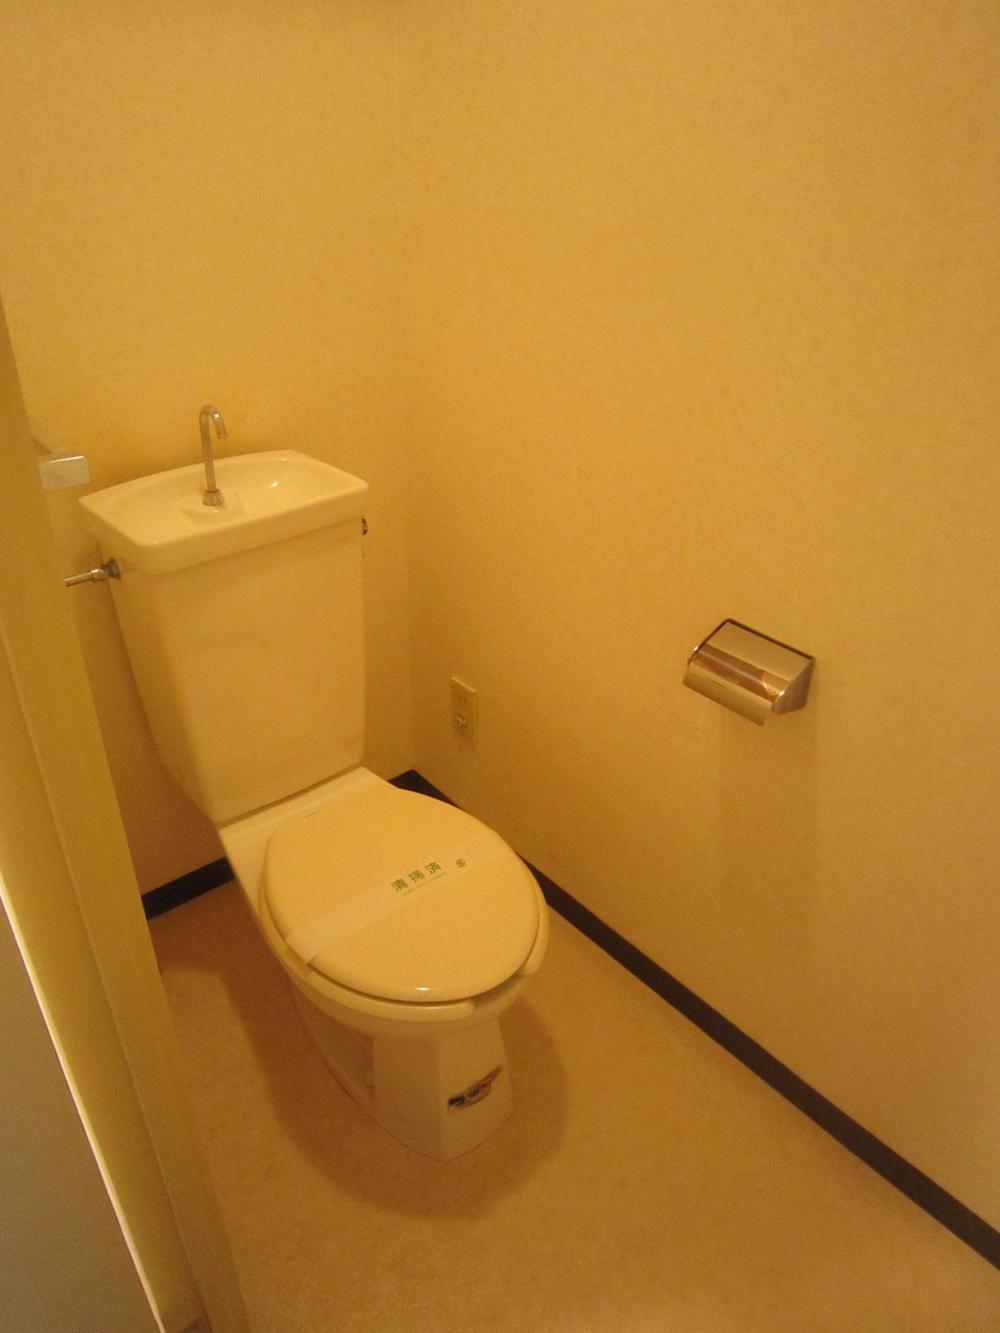 Toilet. Toilet (2013 November shooting)